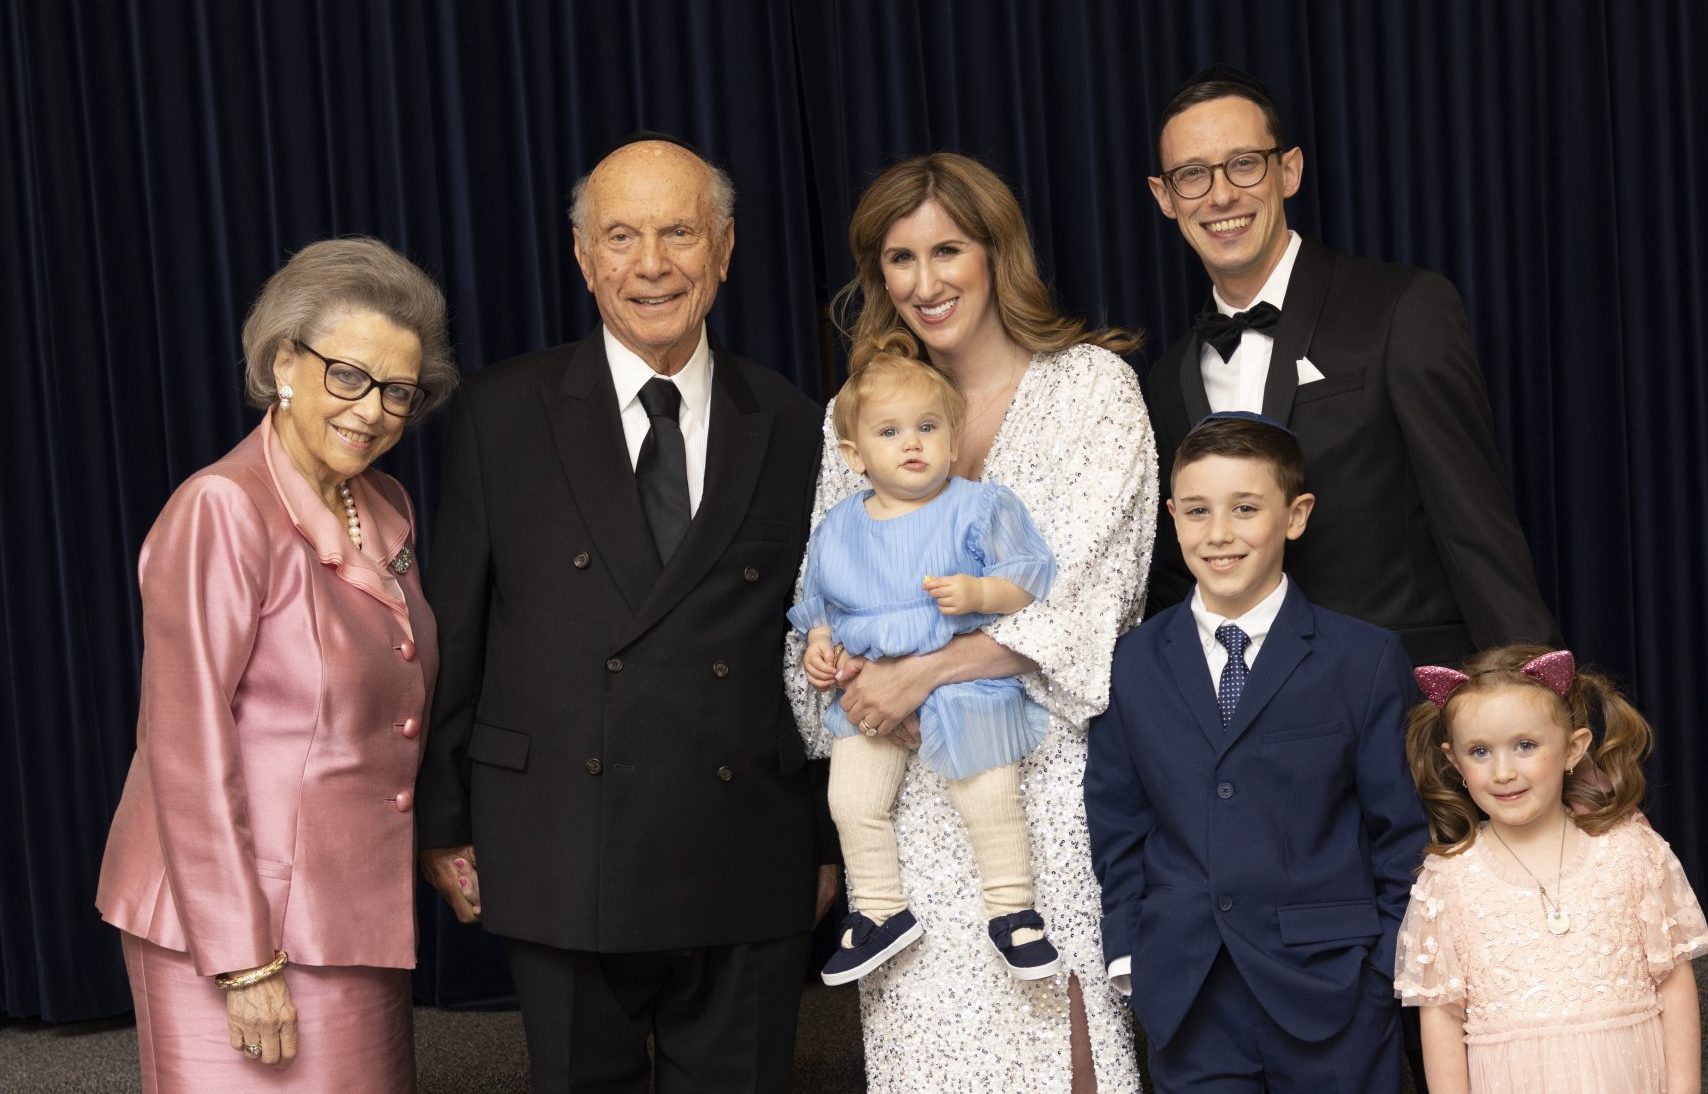 Elisabeth Schneier, Rabbi Arthur Schneier, Jessica Rein, Dr. Joshua Rein, and their children